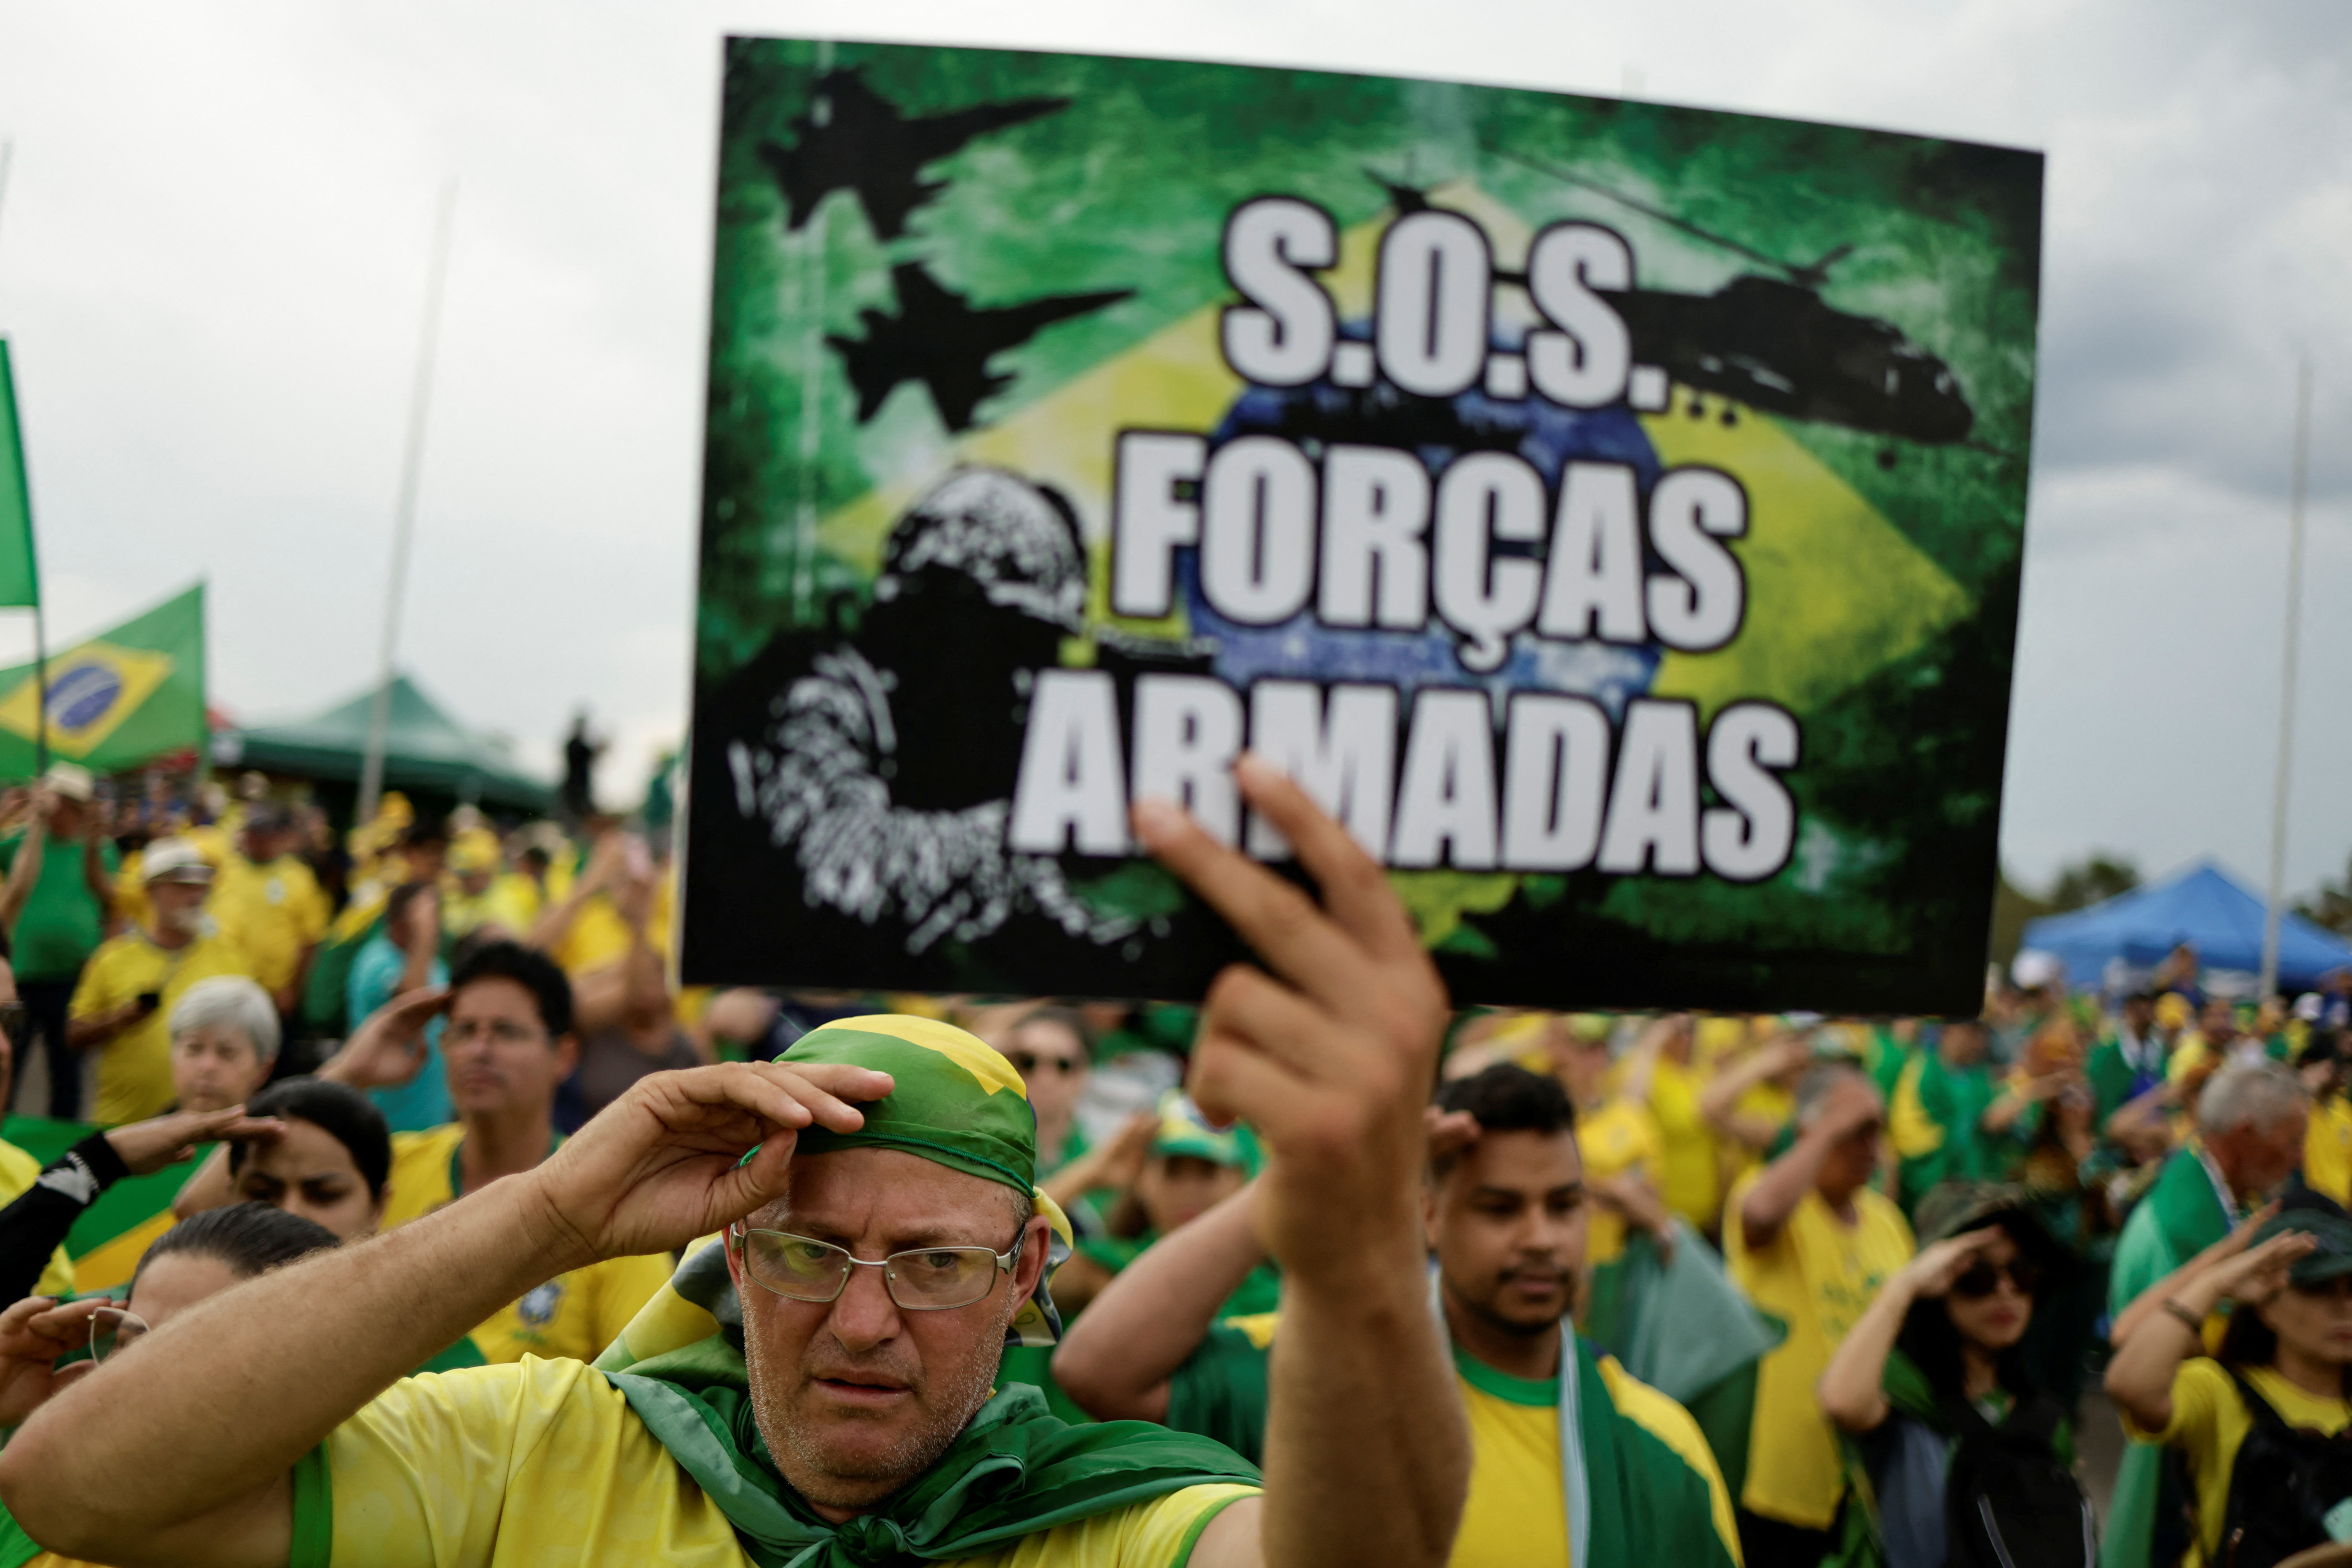 Bolsonaro se dirigió a sus simpatizantes en la capital Brasilia tras perder las elecciones, diciéndoles brevemente que las fuerzas armadas estaban bajo su control. En una segunda ocasión, guardó silencio mientras un grupo de partidarios rezaba por él. (REUTERS)